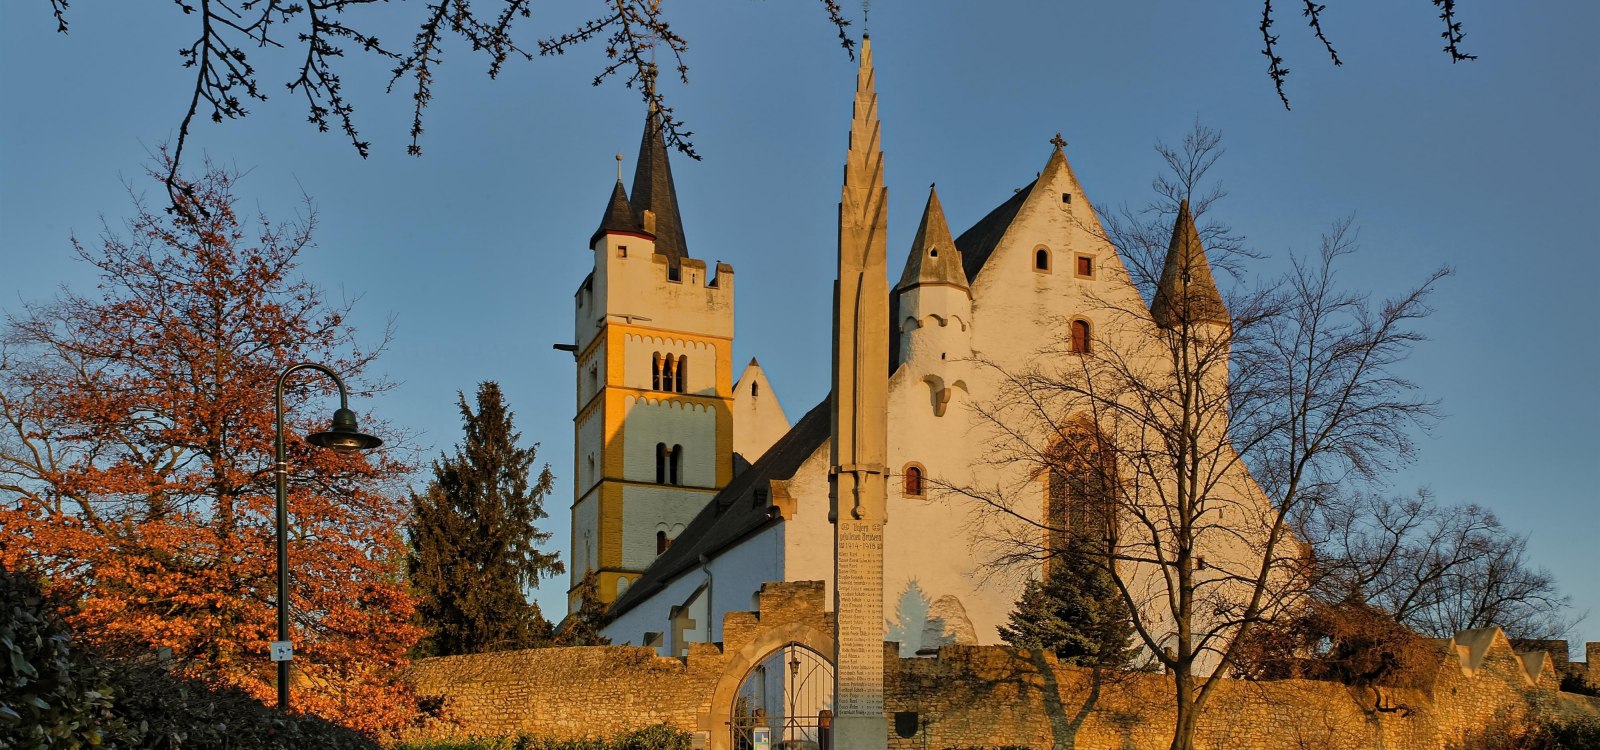 Burgkirche Ober-Ingelheim